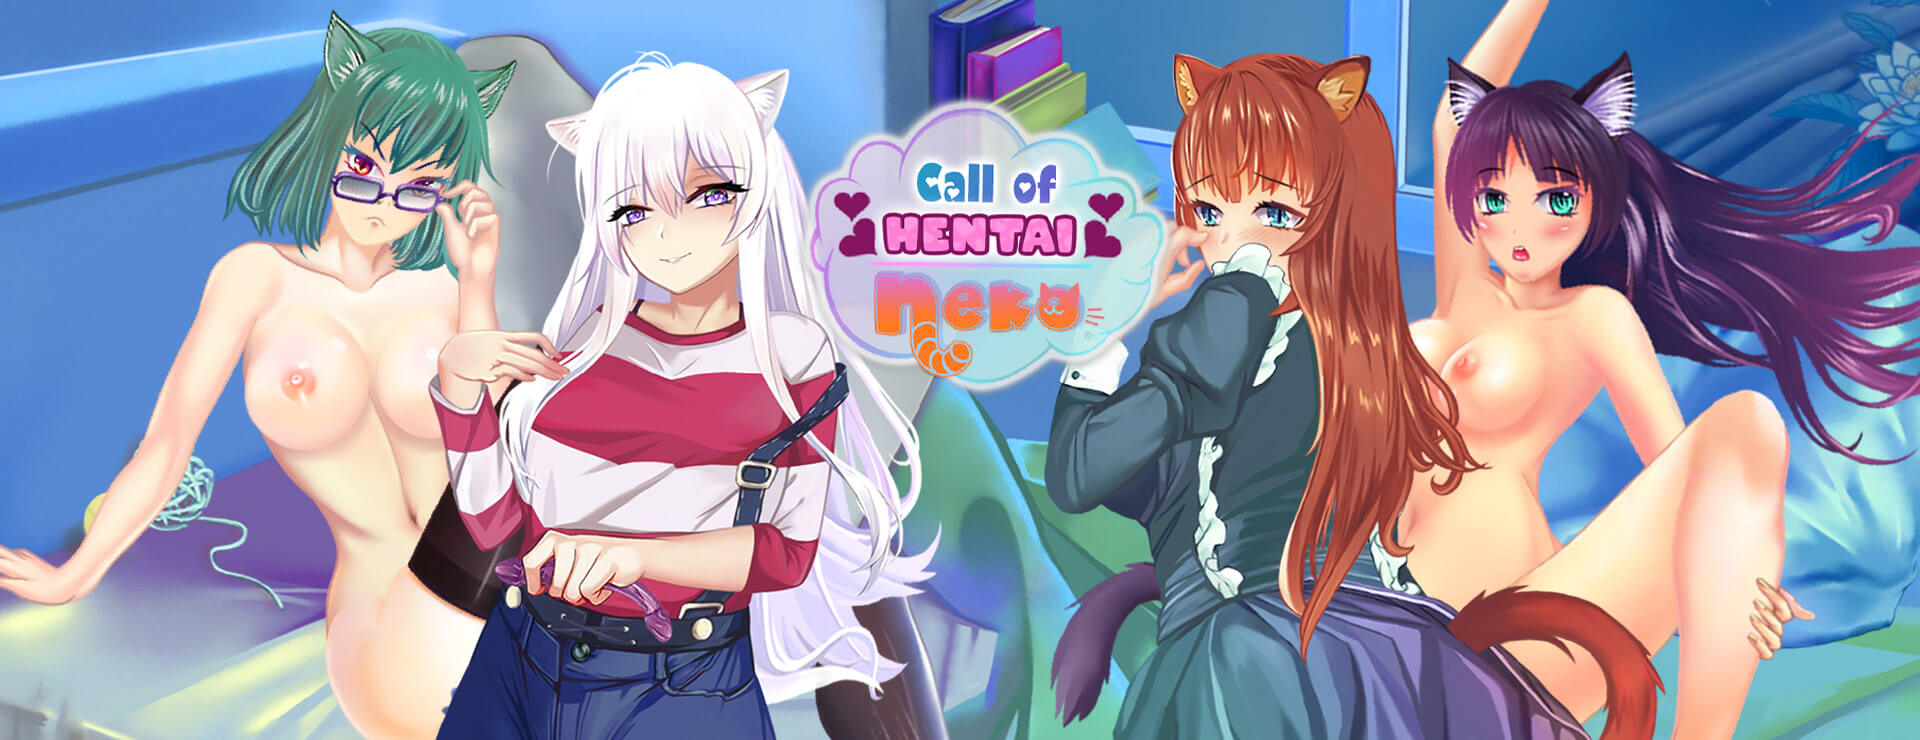 Call of Hentai Neko - パズル ゲーム